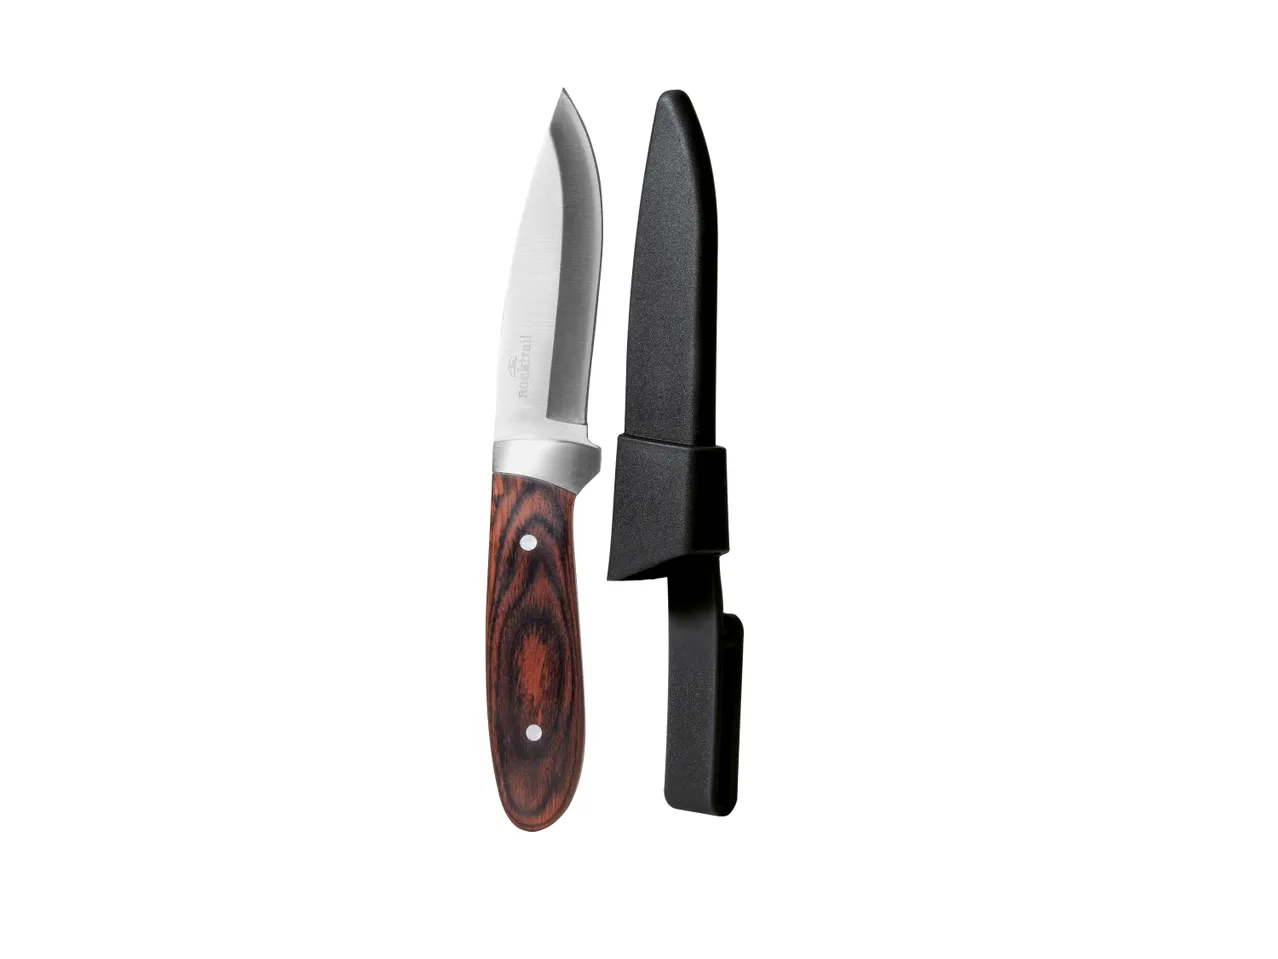 Coltello o coltellino tascabile , prezzo 5.99 EUR 
Coltello o coltellino tascabile ...